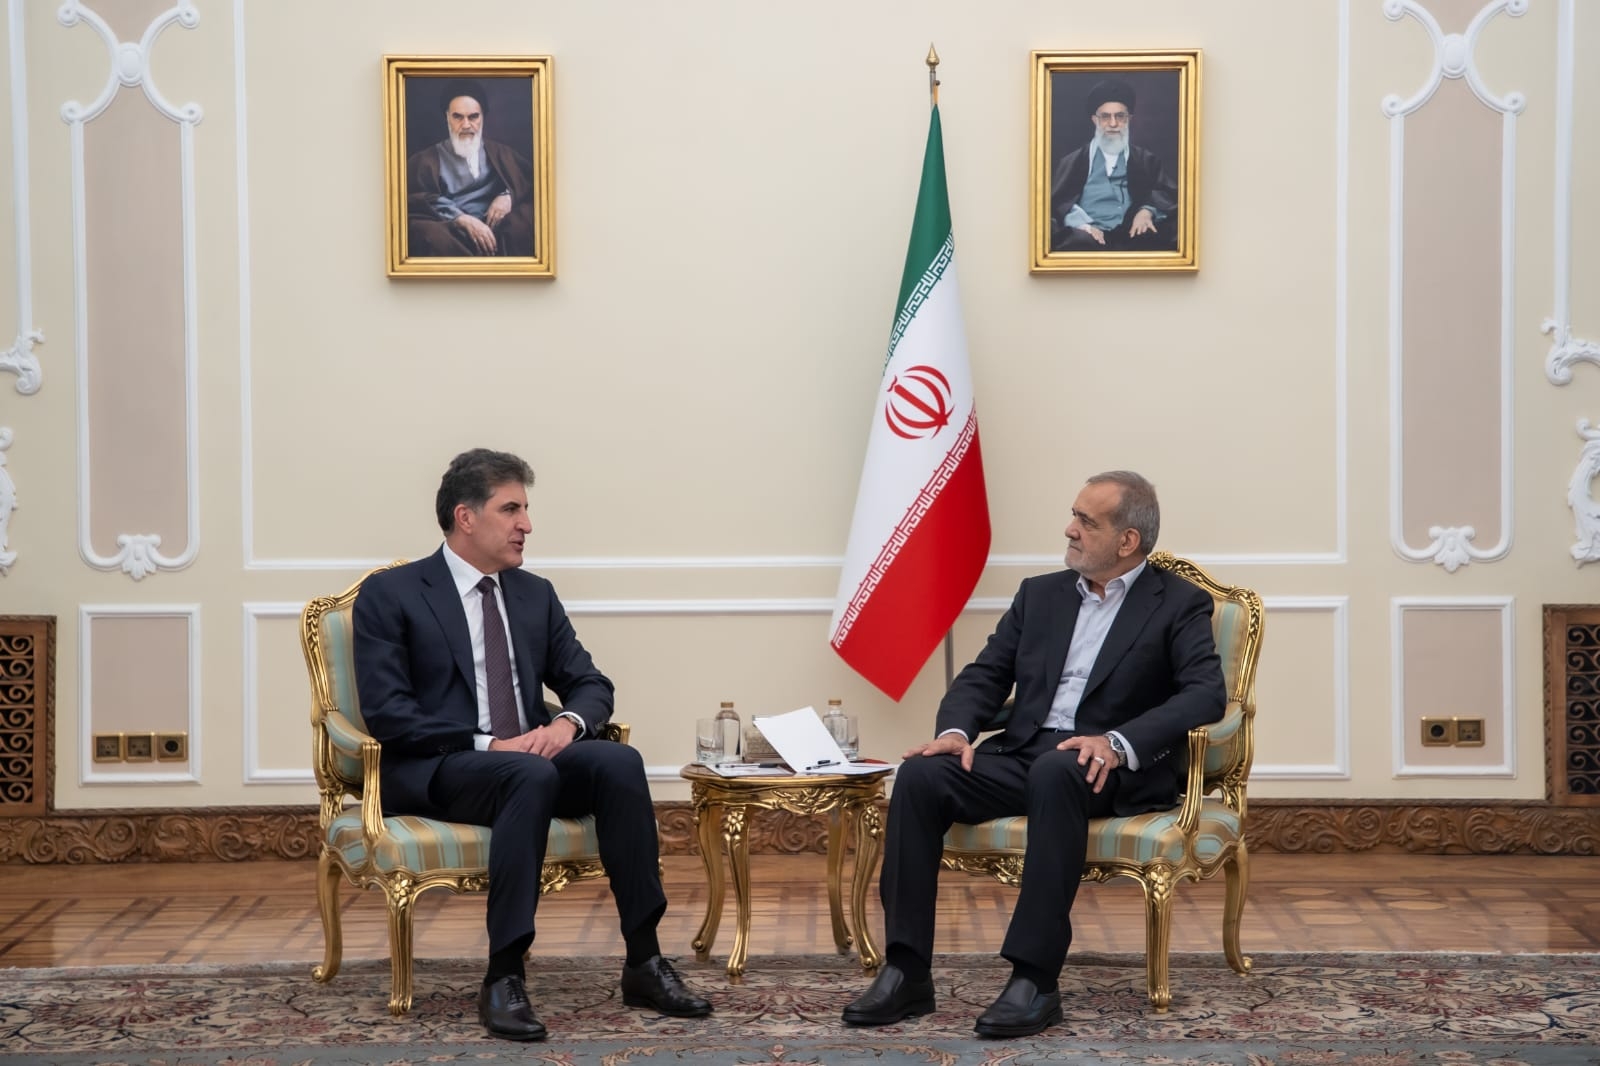 President Nechirvan Barzani meets with President Masoud Pezeshkian of Iran